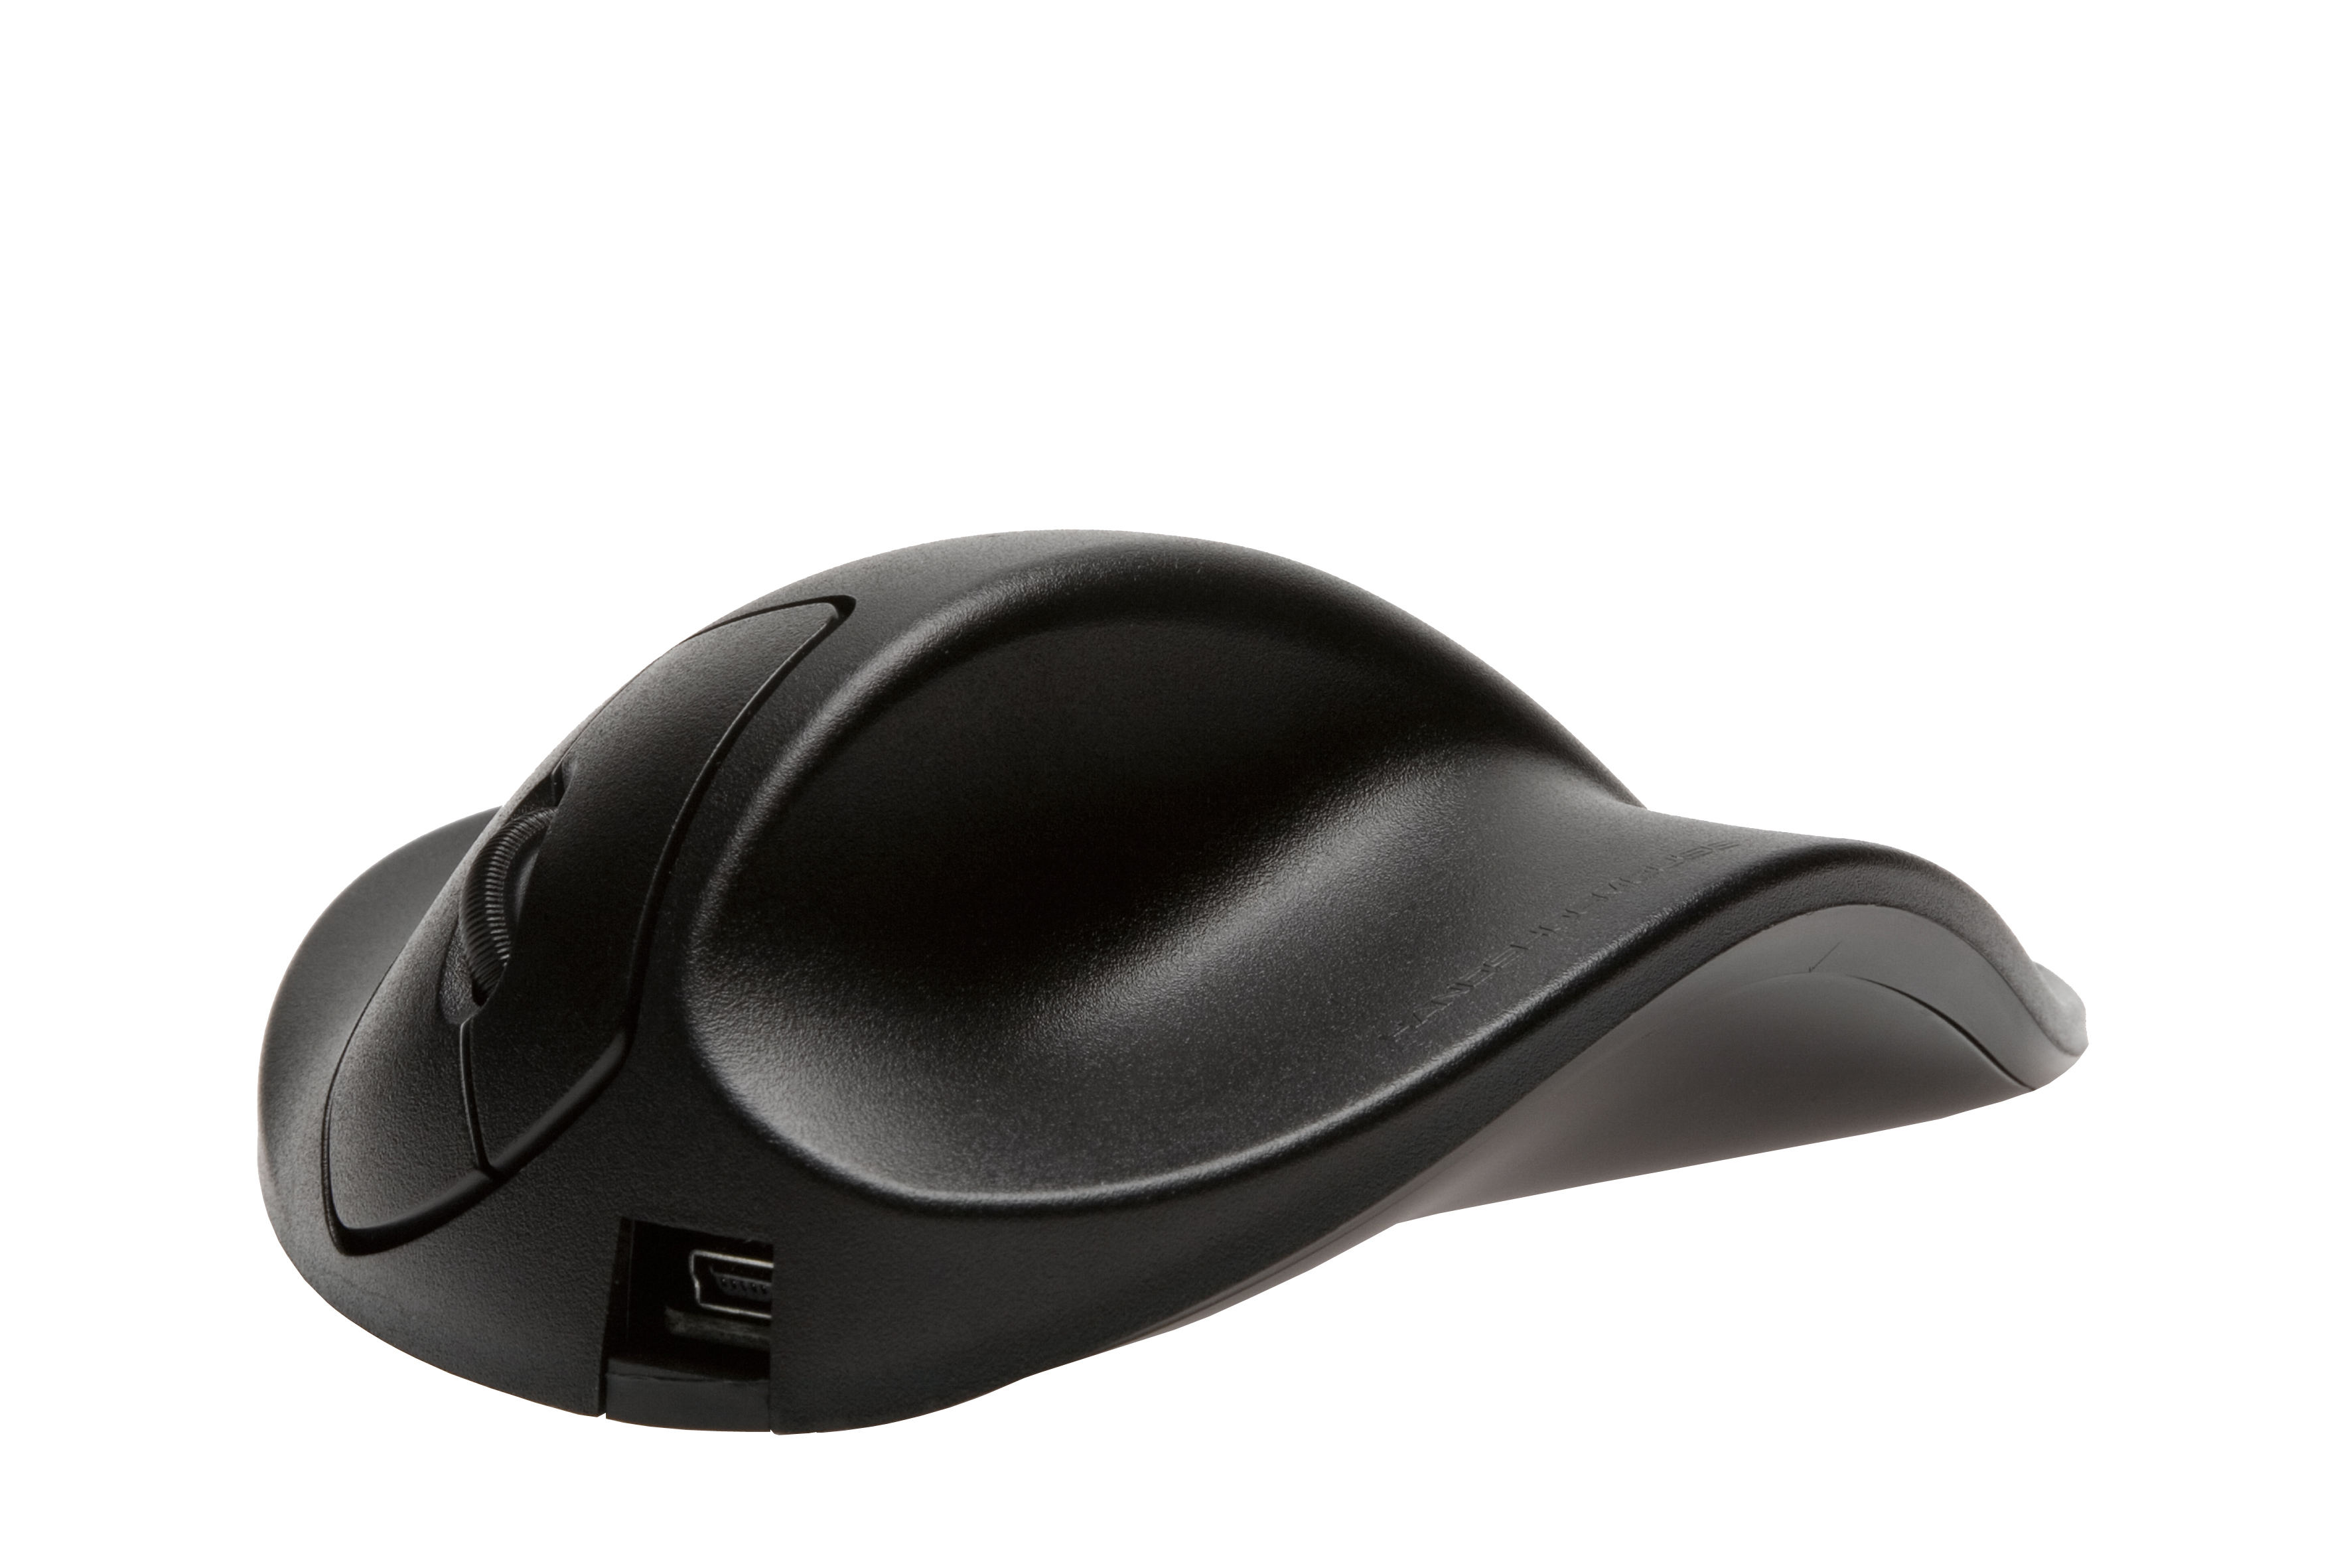 HIPPUS LM2WL ergonomische Maus, schwarz